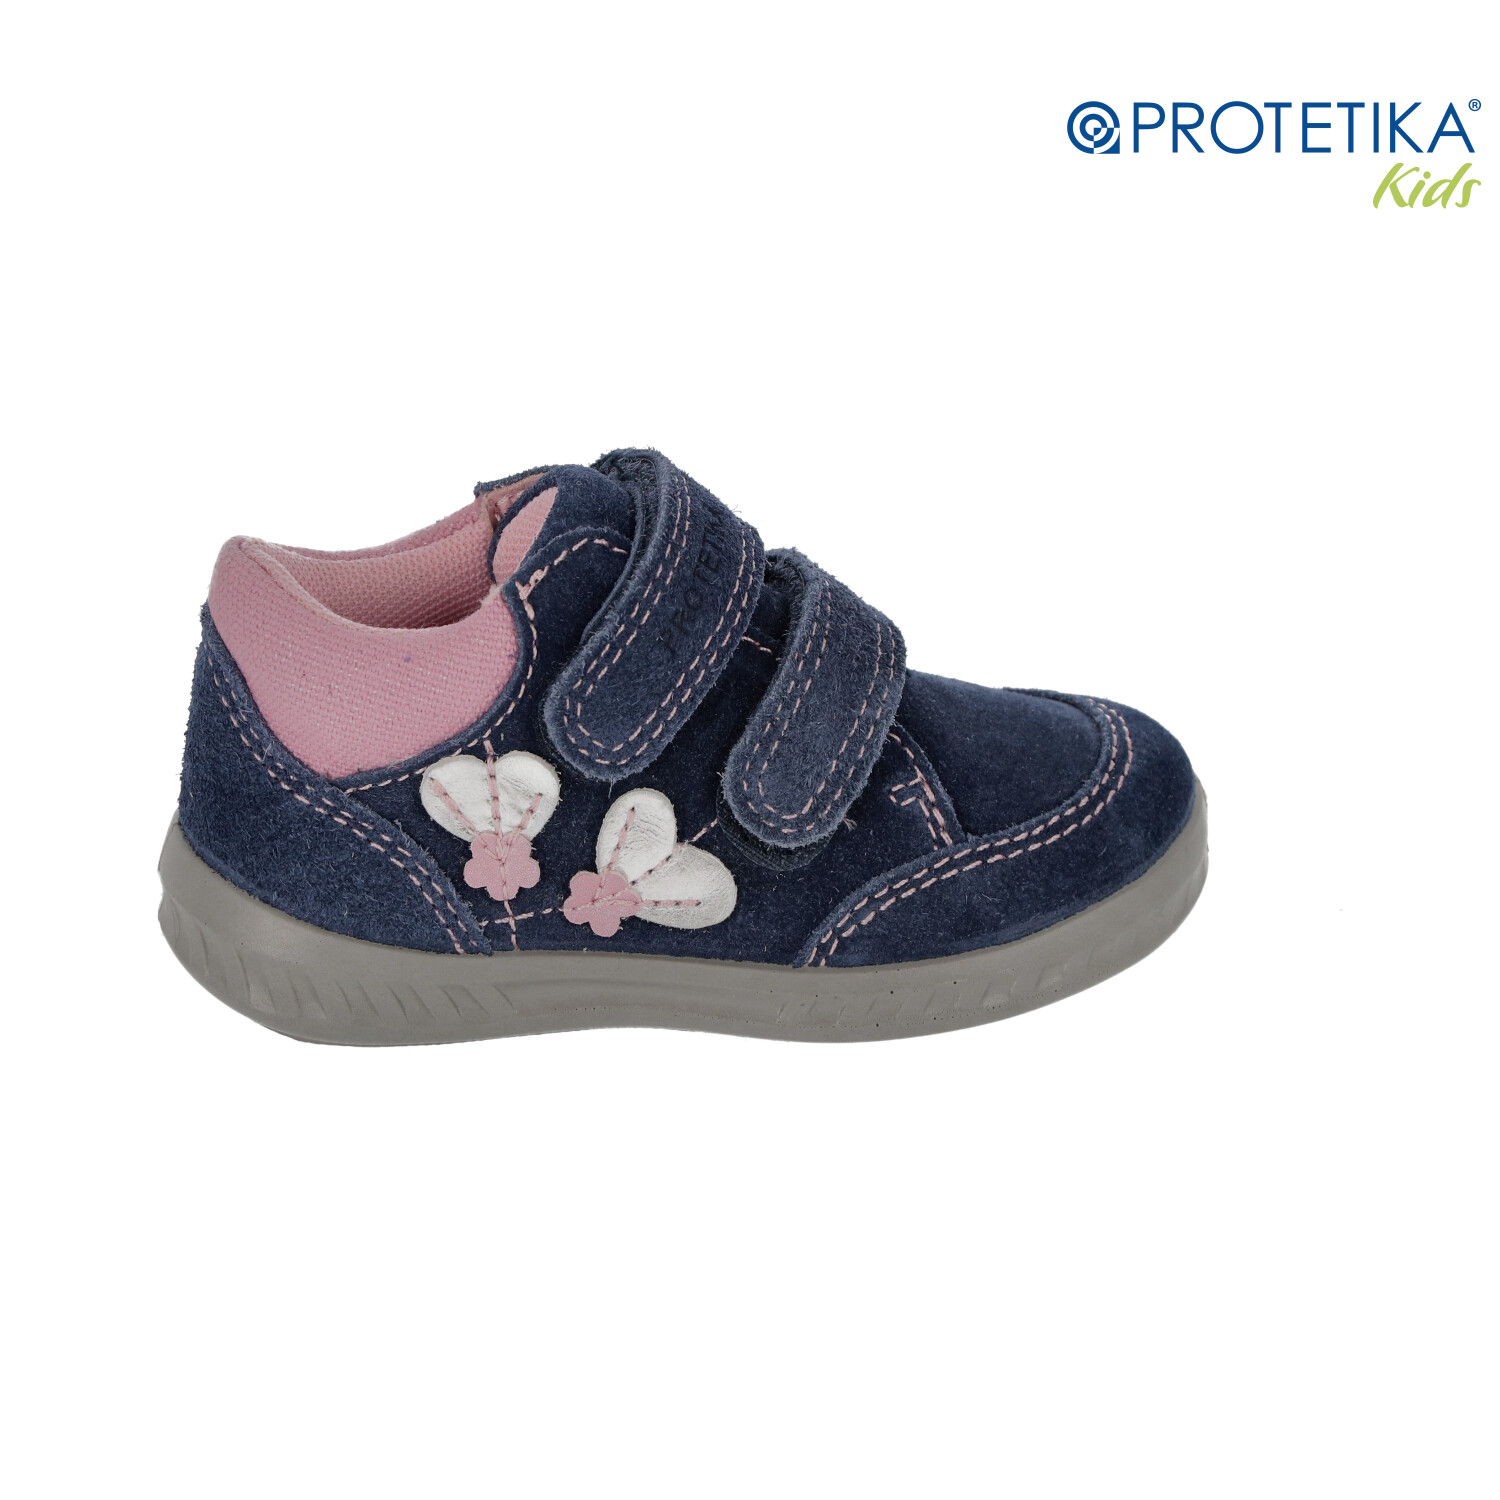 Protetika - topánky s membránou PRO-tex RORY navy